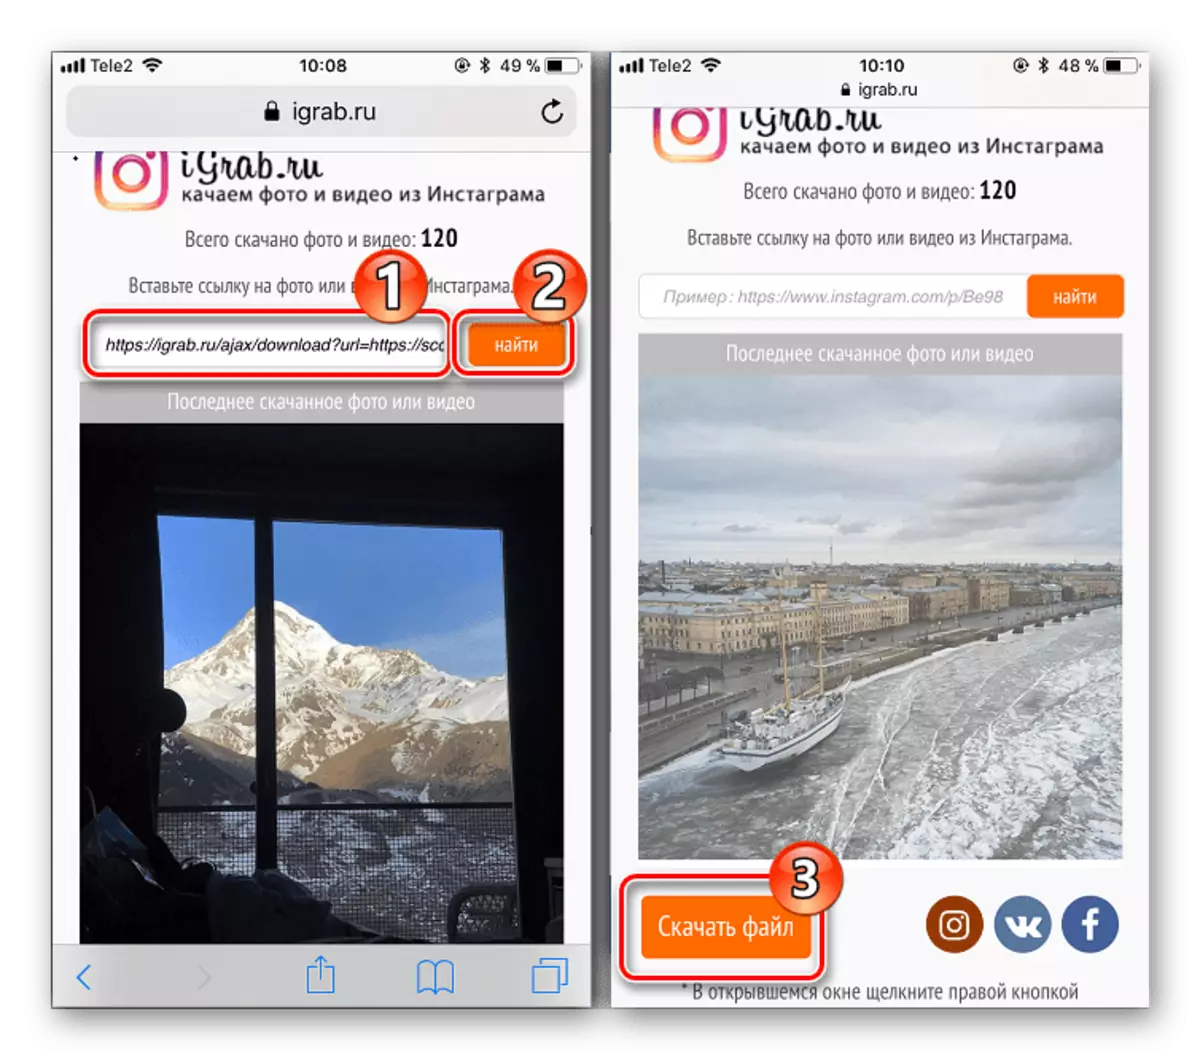 Deskargatu bideoa Instagram-etik iPhone-n lineako zerbitzua erabiliz Igrab.ru